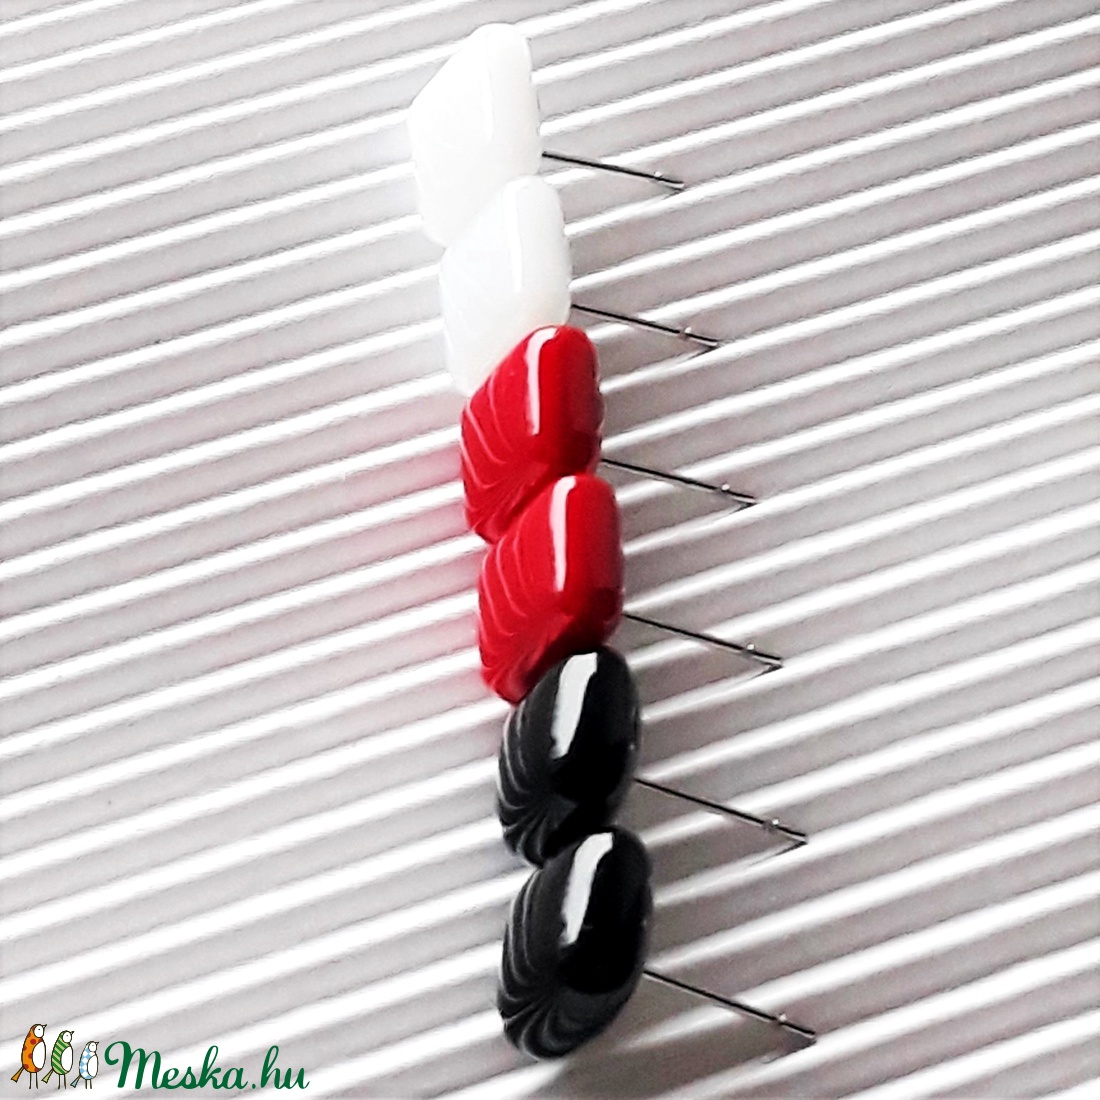 Klasszikus fekete-fehér-piros üveg kocka fülbevaló csomag orvosi fém alapon , minimal, trendi, üvegékszer szett - ékszer - fülbevaló - pötty fülbevaló - Meska.hu